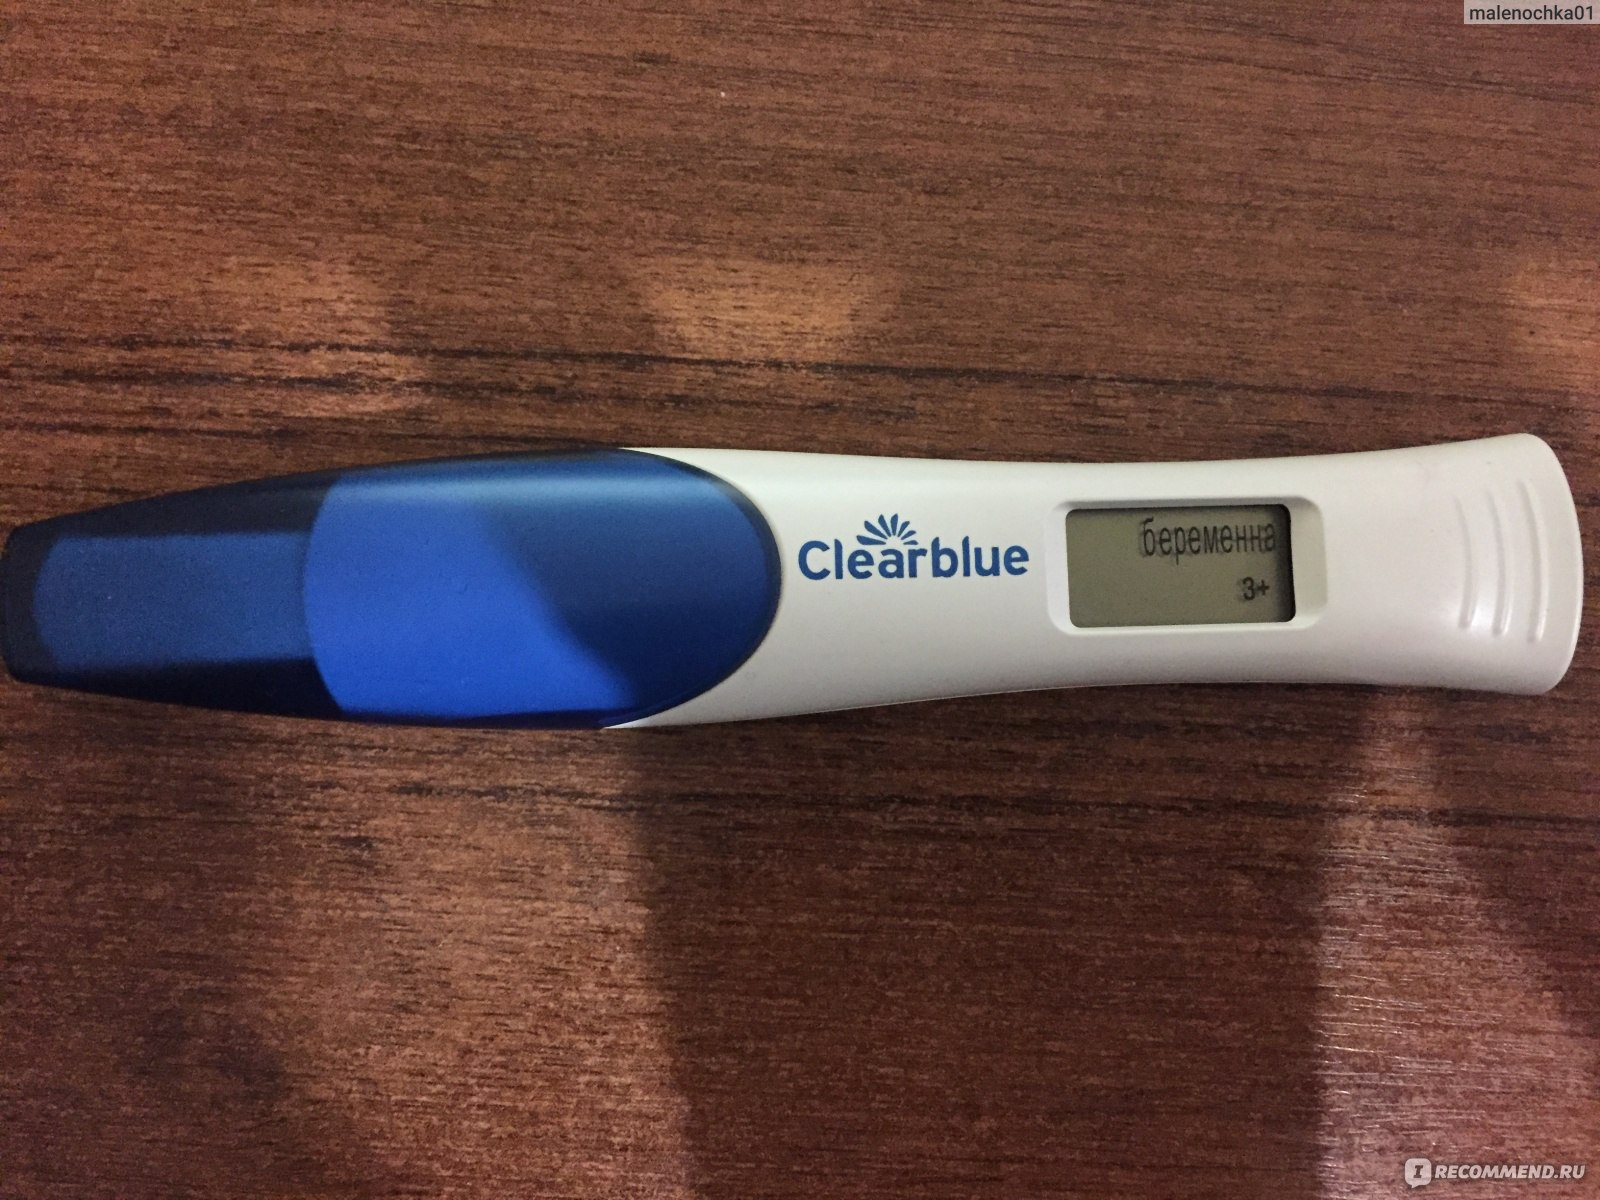 Электронный тест показал 2 3 недели. Тест на беременность Clearblue. Цифровой тест на беременность Clearblue. Цифровой электронный тест на беременность. Clearblue 3+.